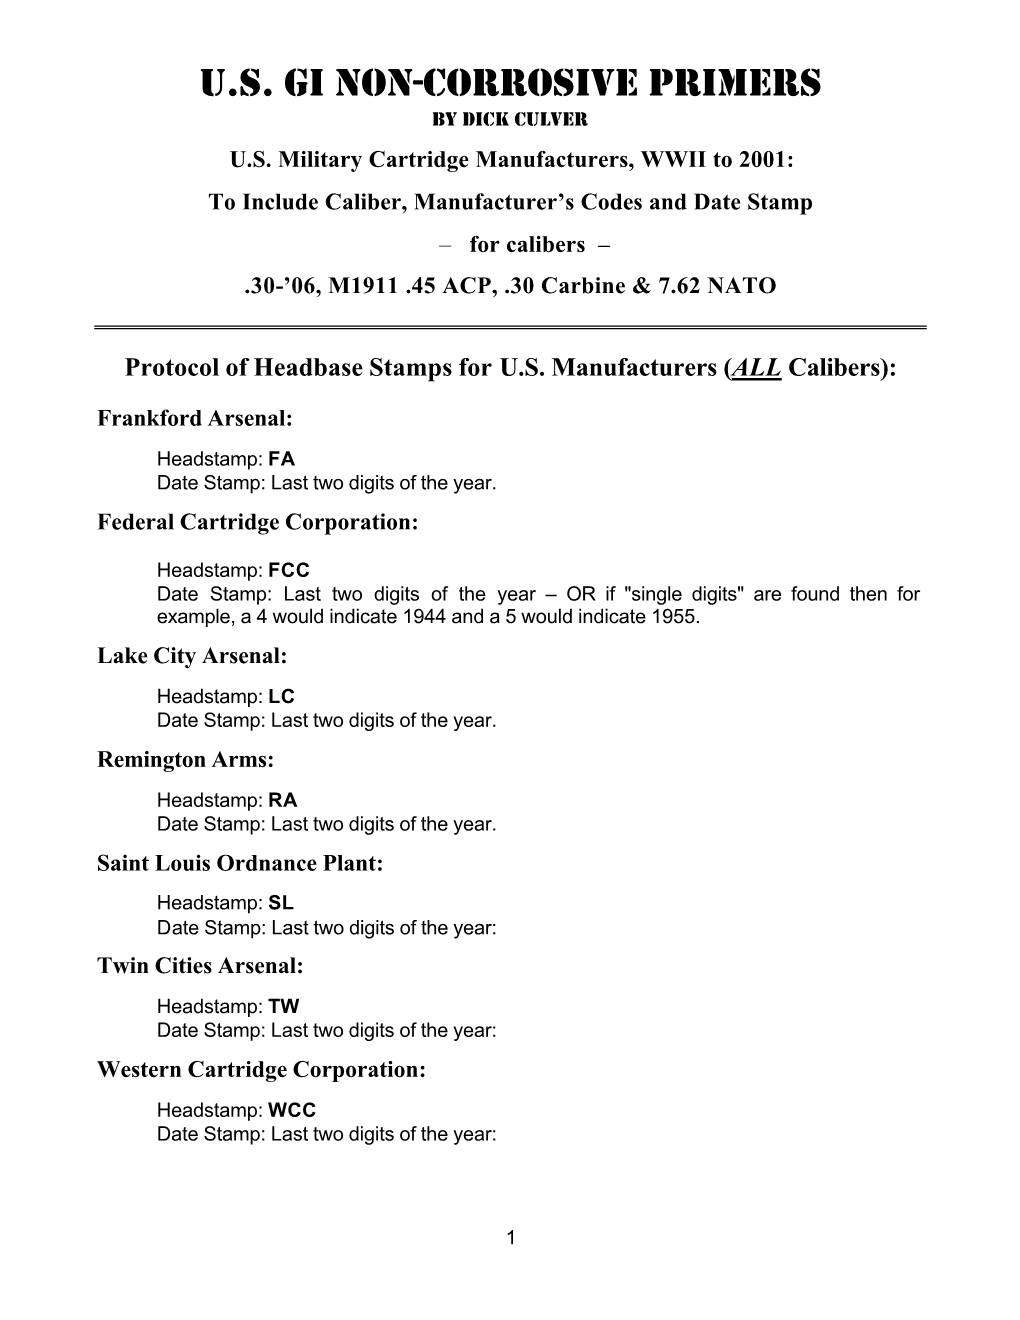 U.S. GI Non-Corrosive Primers by Dick Culver